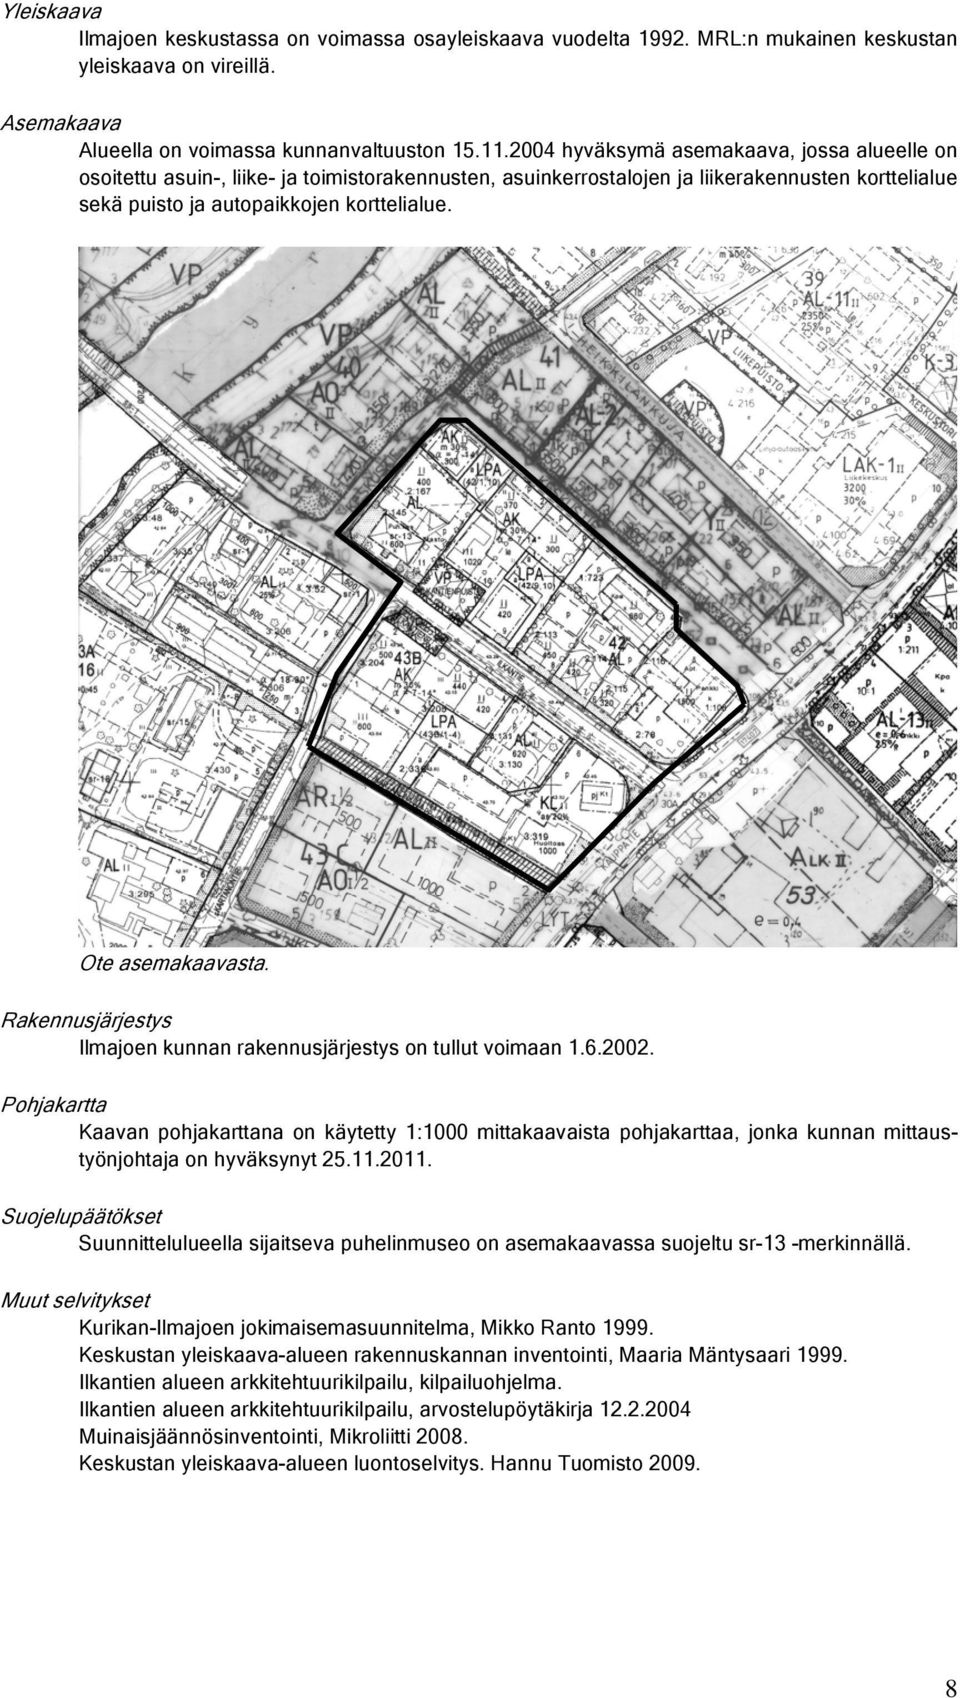 Ote asemakaavasta. Rakennusjärjestys Ilmajoen kunnan rakennusjärjestys on tullut voimaan 1.6.2002.